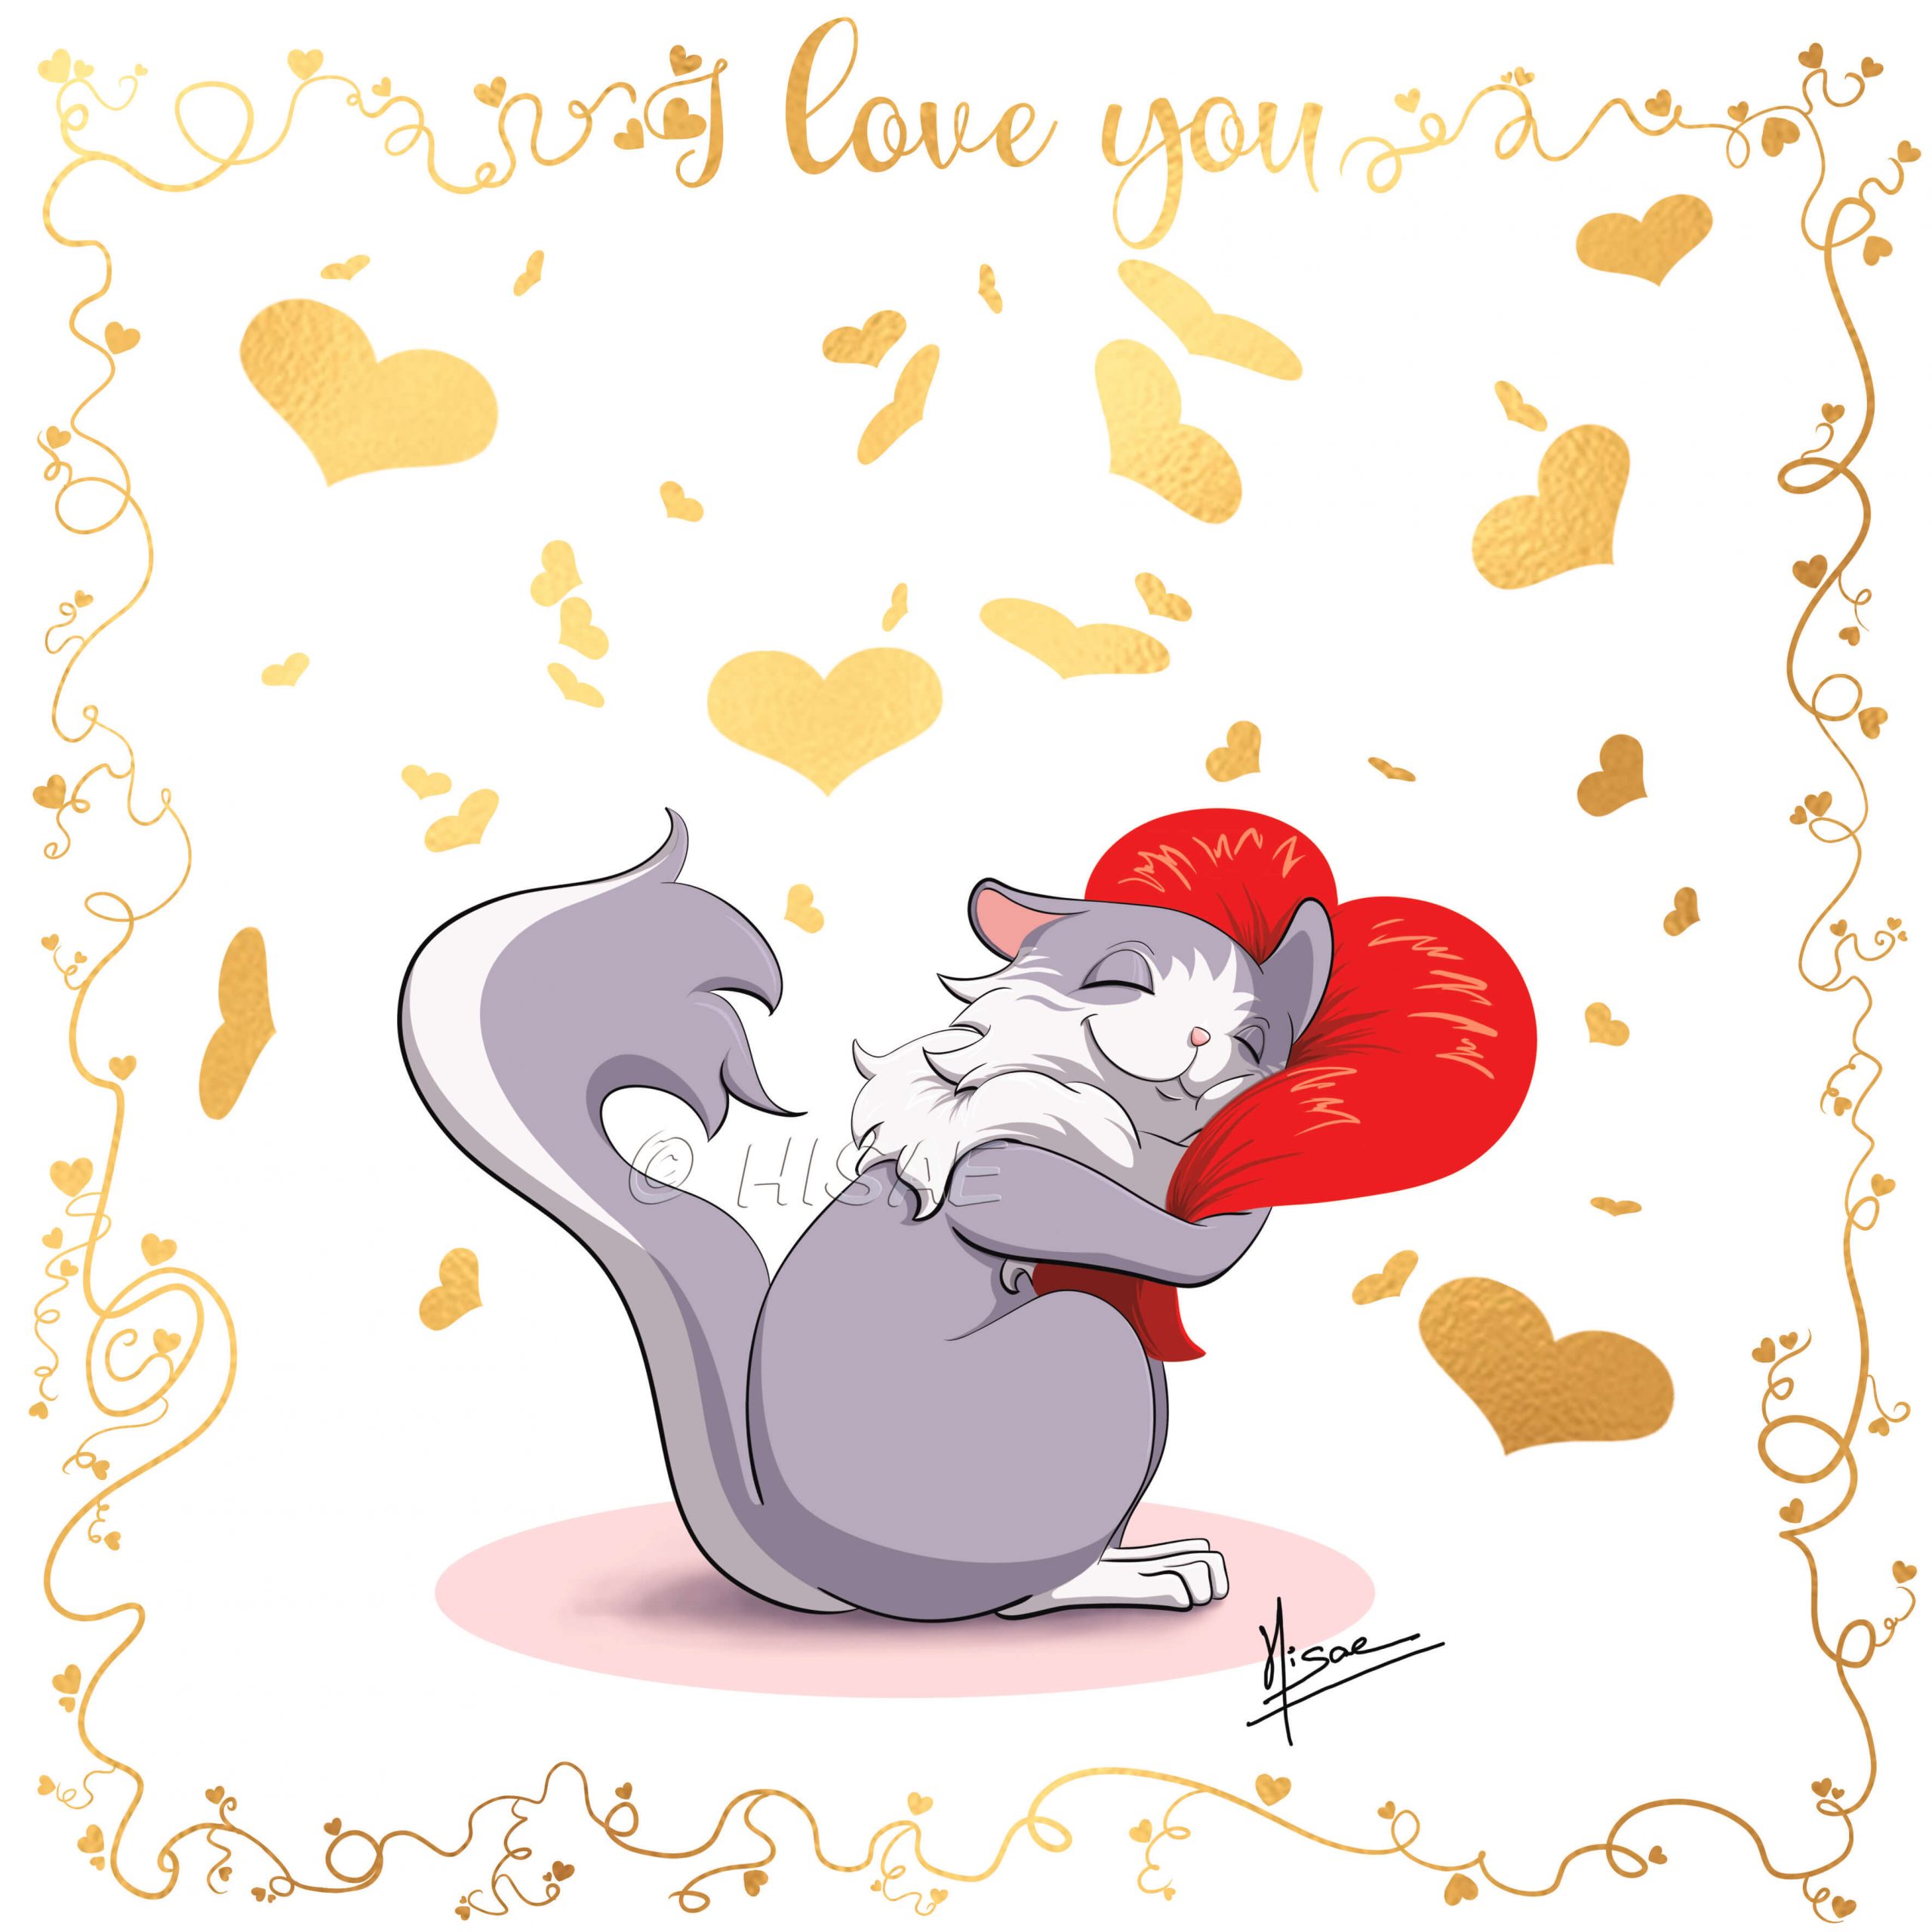 Dessin numérique format carte postale sur l'amour de soi représentant un chat qui enlace un cœur ©Hisae illustrations